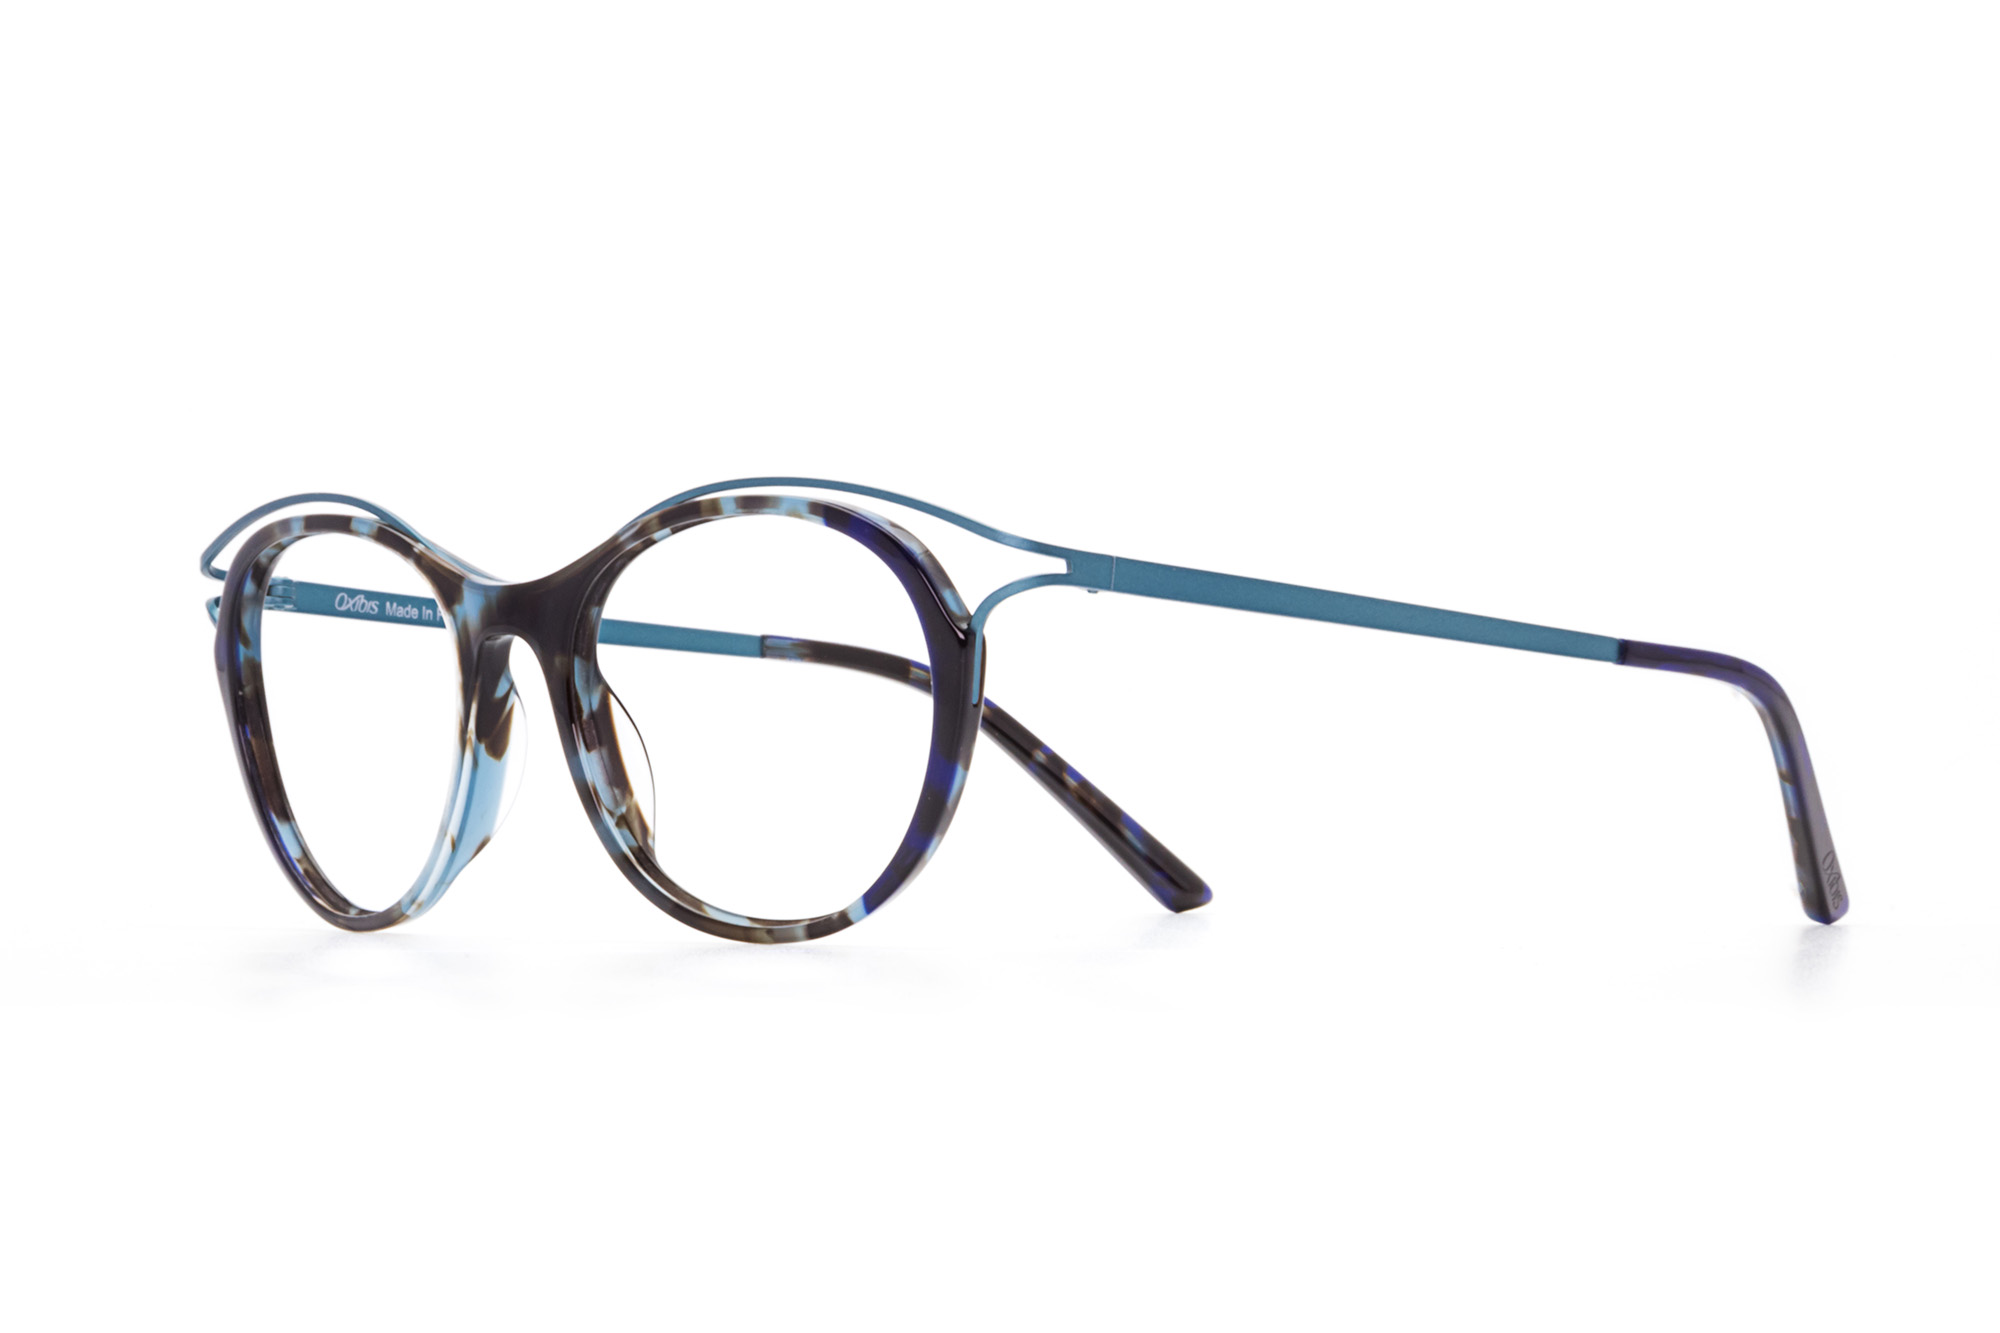 Kullanıma hazır optik tarzda işlenmiş camları ve optik uyumlu çerçevesiyle Oxibis Boogy BG1C4 49 küçük ekartman mavi-yeşil ve lacivert renkli cat eye model kadın gözlüğünü optisyen veya gözlükçülerin sunacağı numarasız veya numaralı cam özelleştirmeleriyle size en yakın gözlükçüden satın alabilirsiniz.